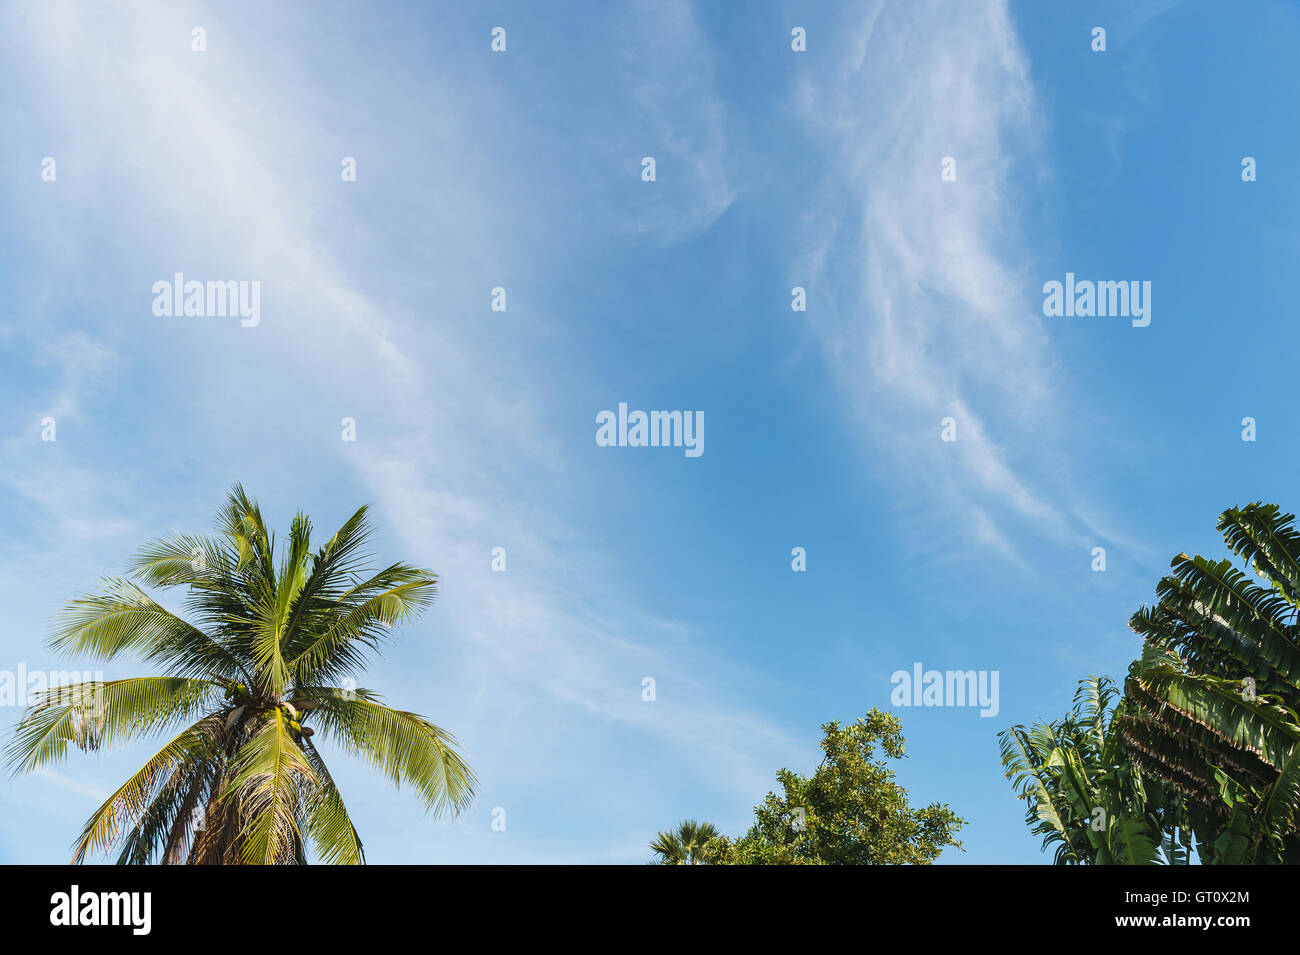 Palmier avec des nuages et ciel bleu et copie espace salon Banque D'Images